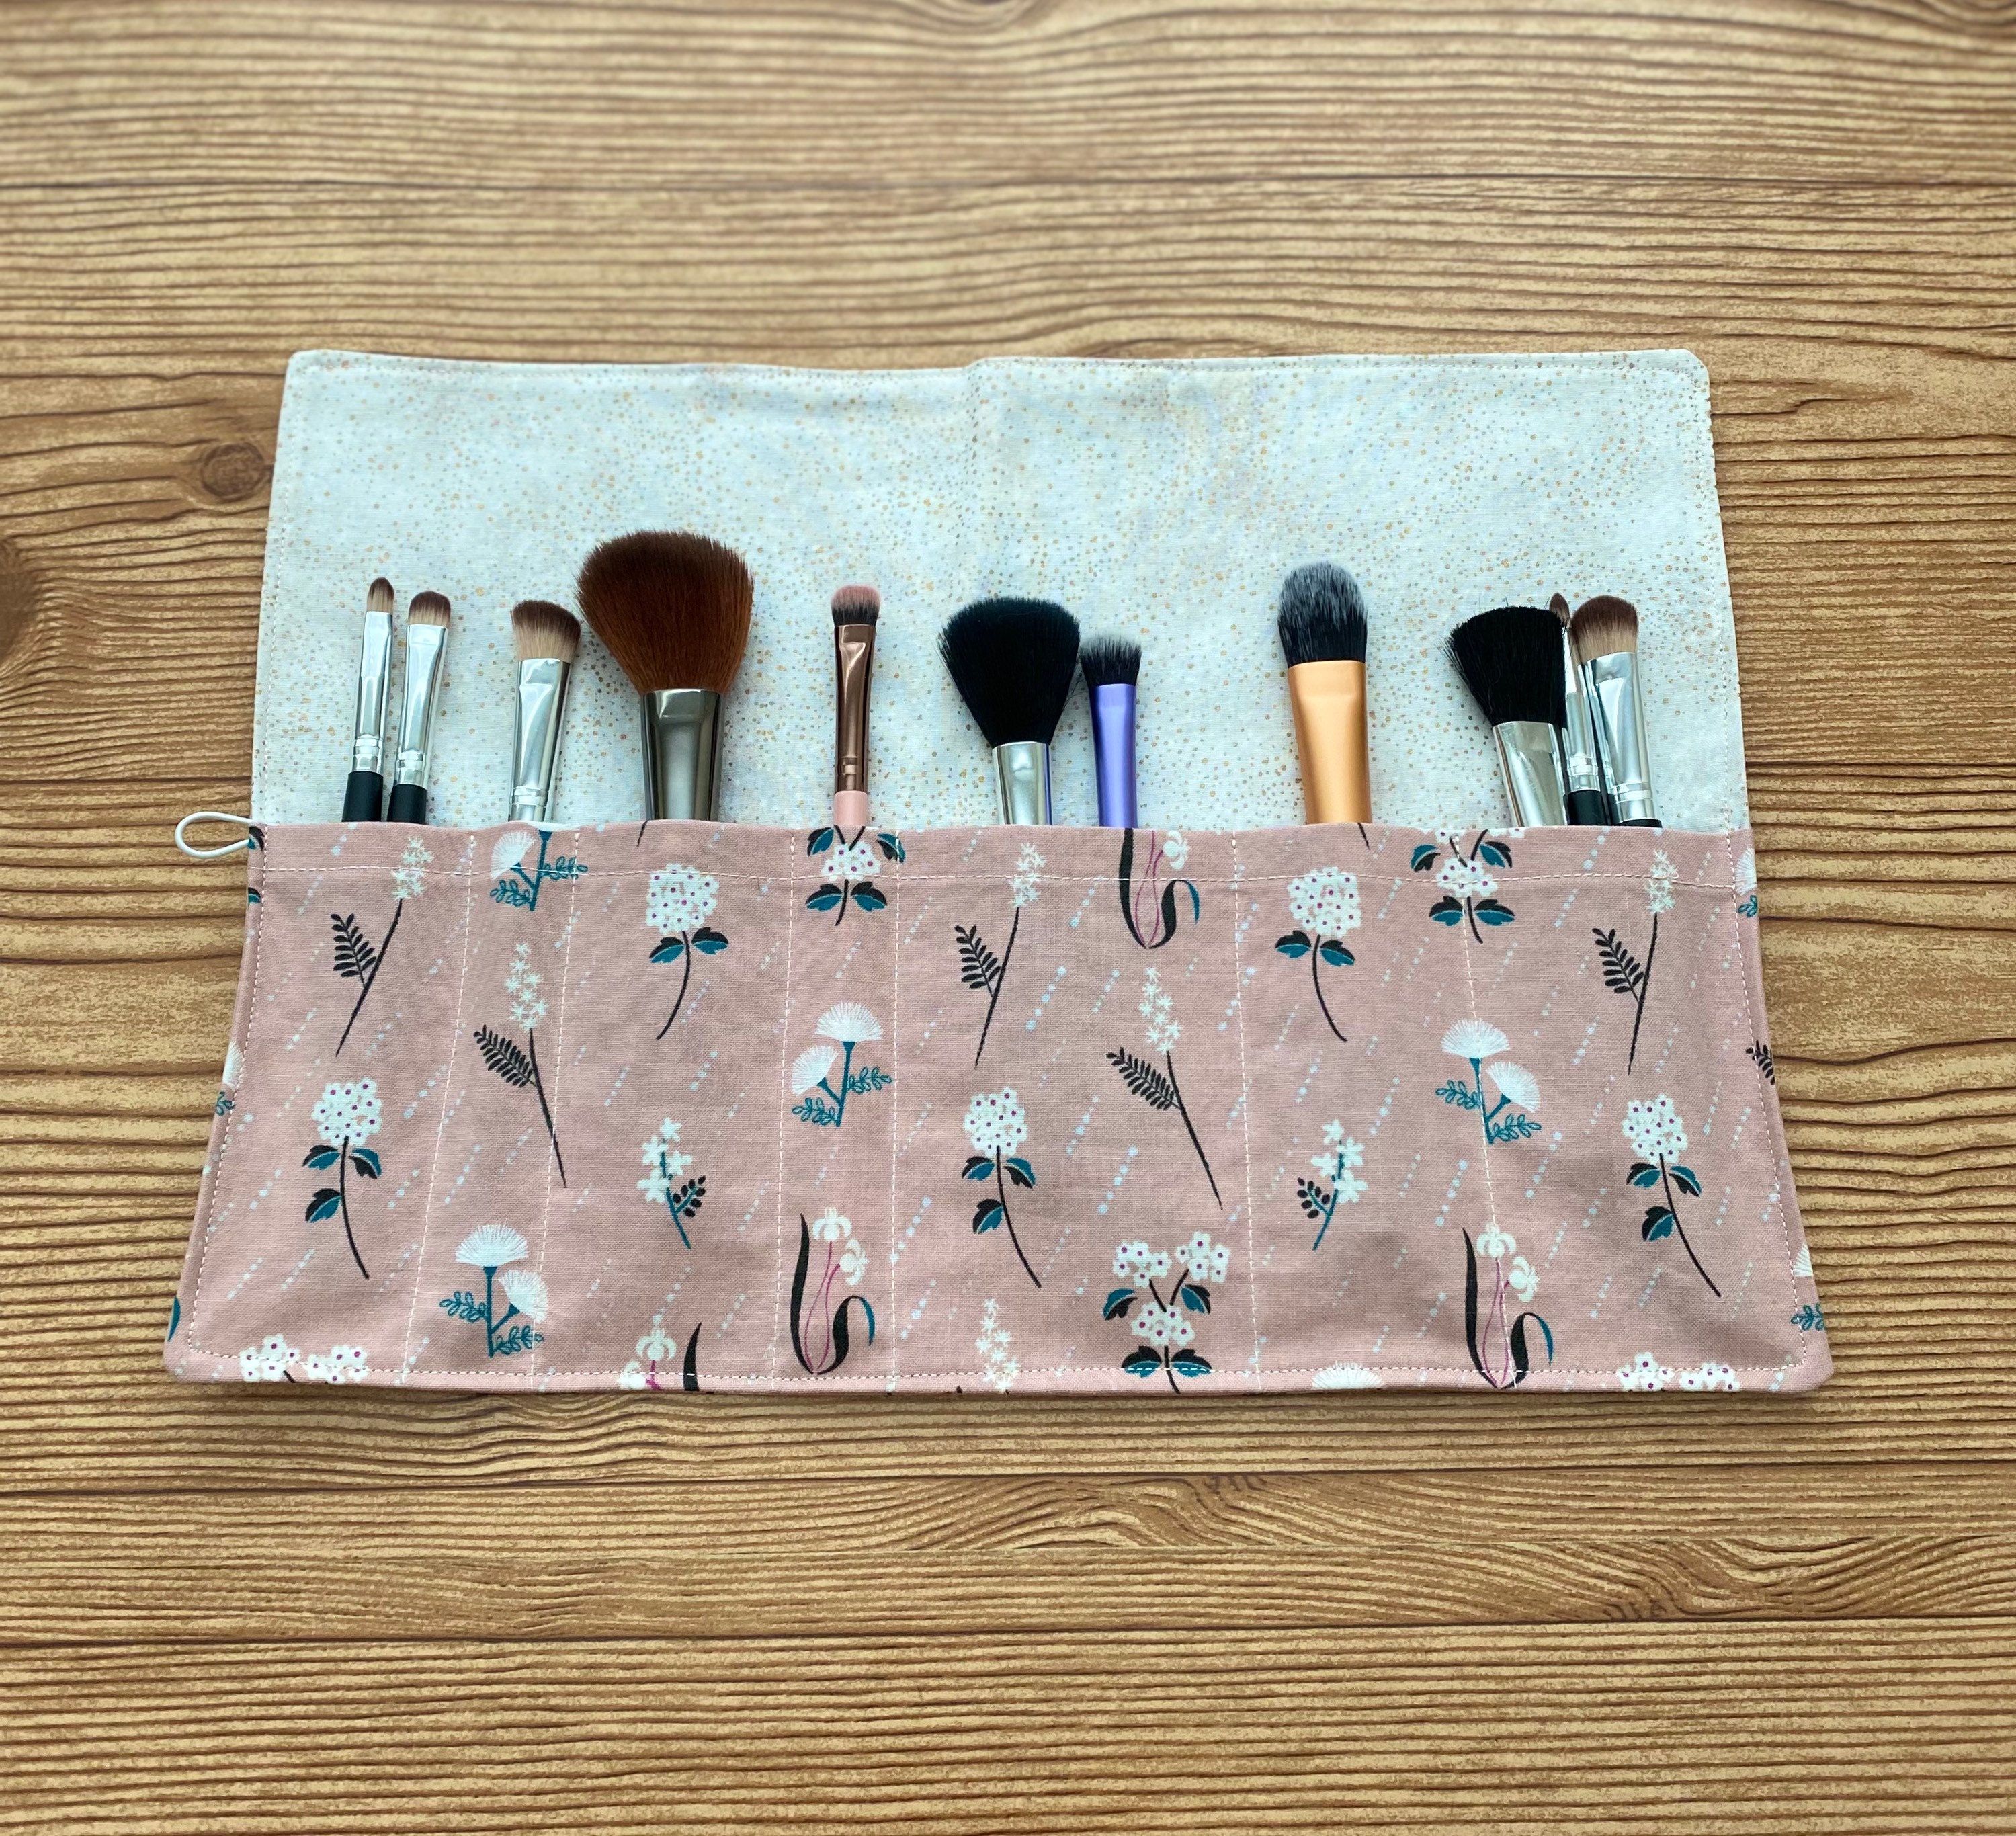 Makeup Brush Roll-floral-travel Makeup Brush Oranizer-makeup Brush